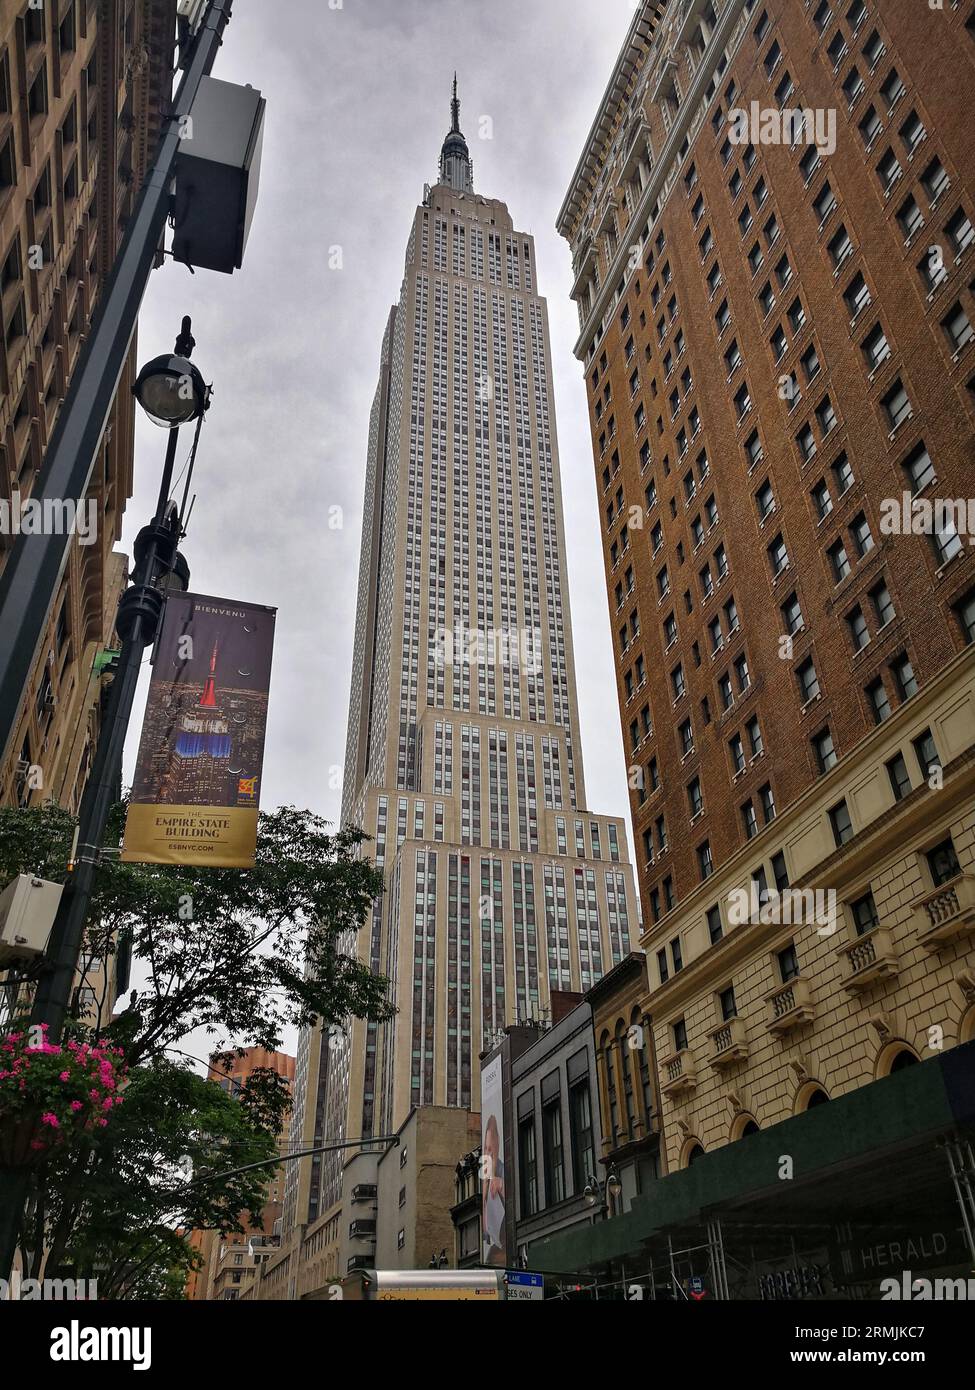 Esta foto muestra una vista del Empire State Building desde la calle en la ciudad de Nueva York. El edificio es alto e imponente, y domina el horizonte Foto de stock